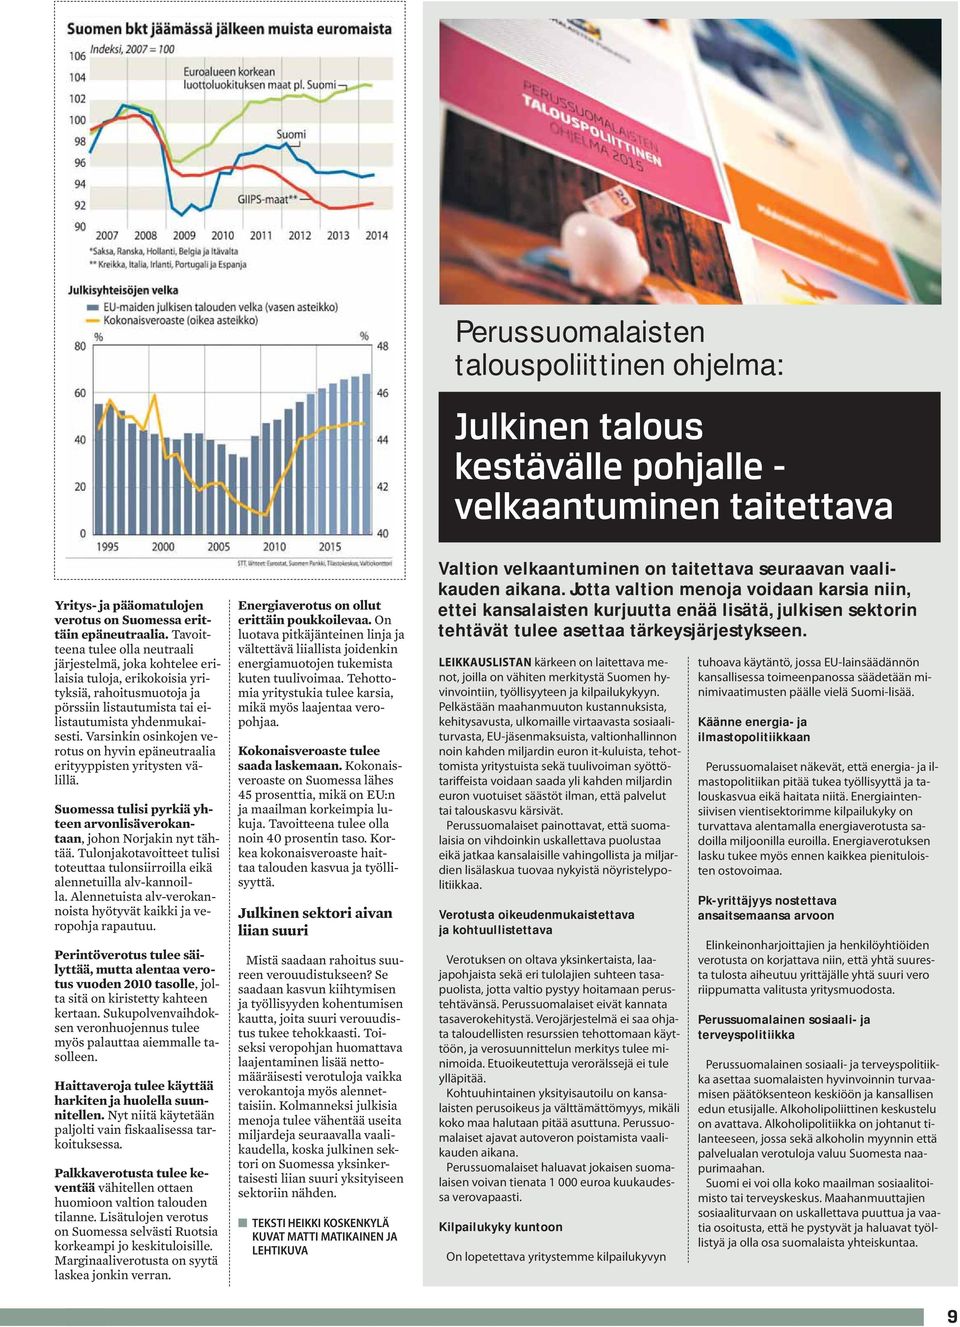 Varsinkin osinkojen verotus on hyvin epäneutraalia erityyppisten yritysten välillä. Suomessa tulisi pyrkiä yhteen arvonlisäverokantaan, johon Norjakin nyt tähtää.